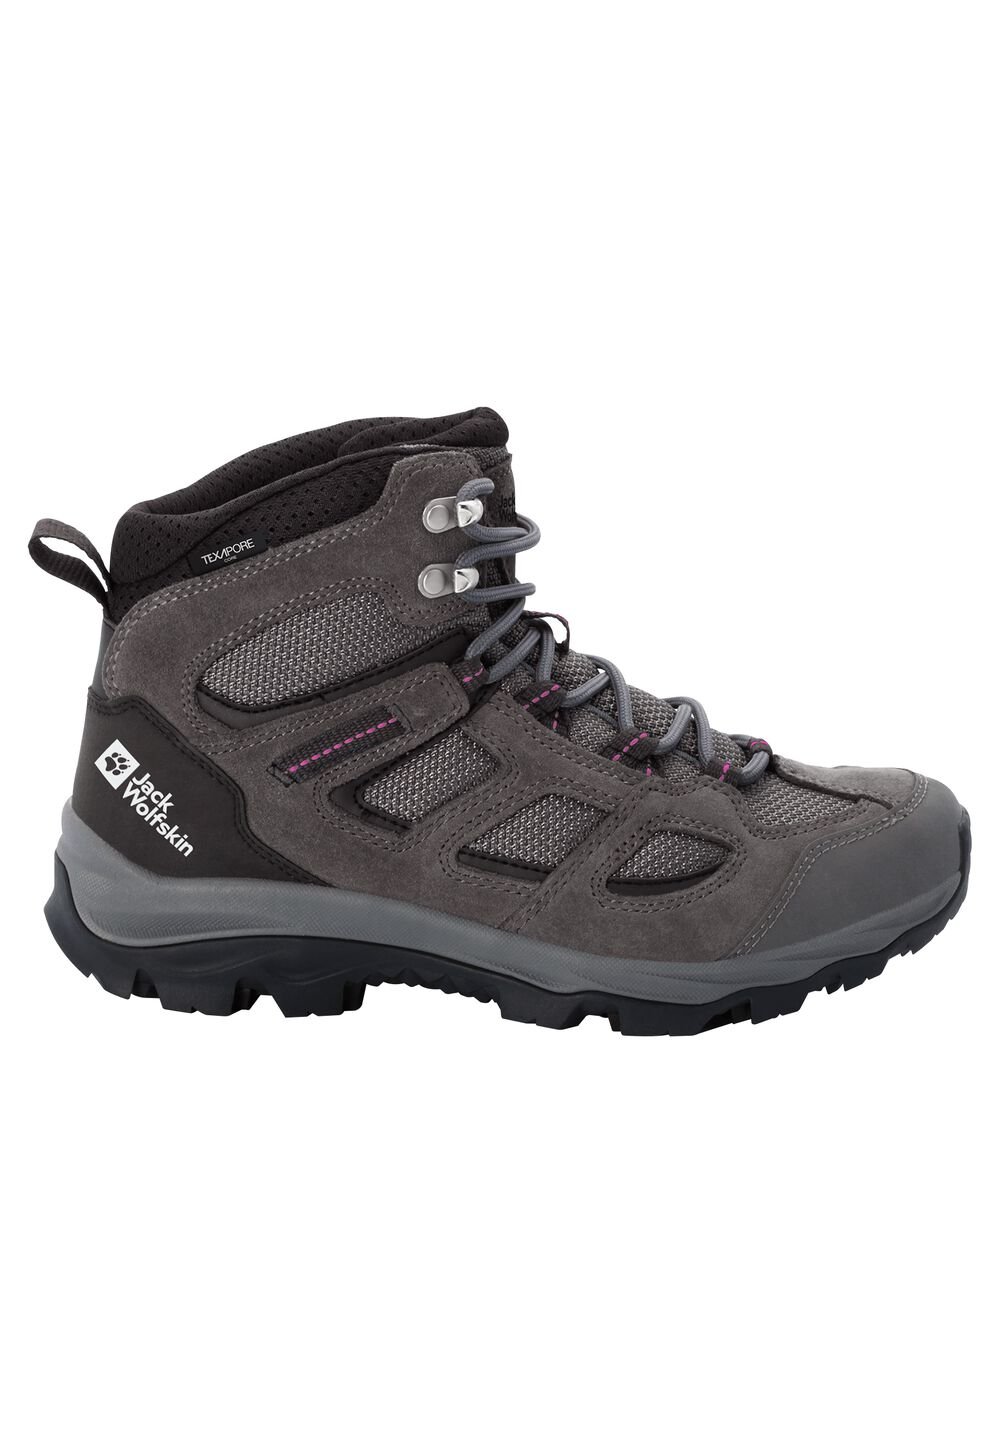 Chaussures de randonnée imperméables femmes Vojo 3 Texapore Mid Women 6,5 gris tarmac grey / pink